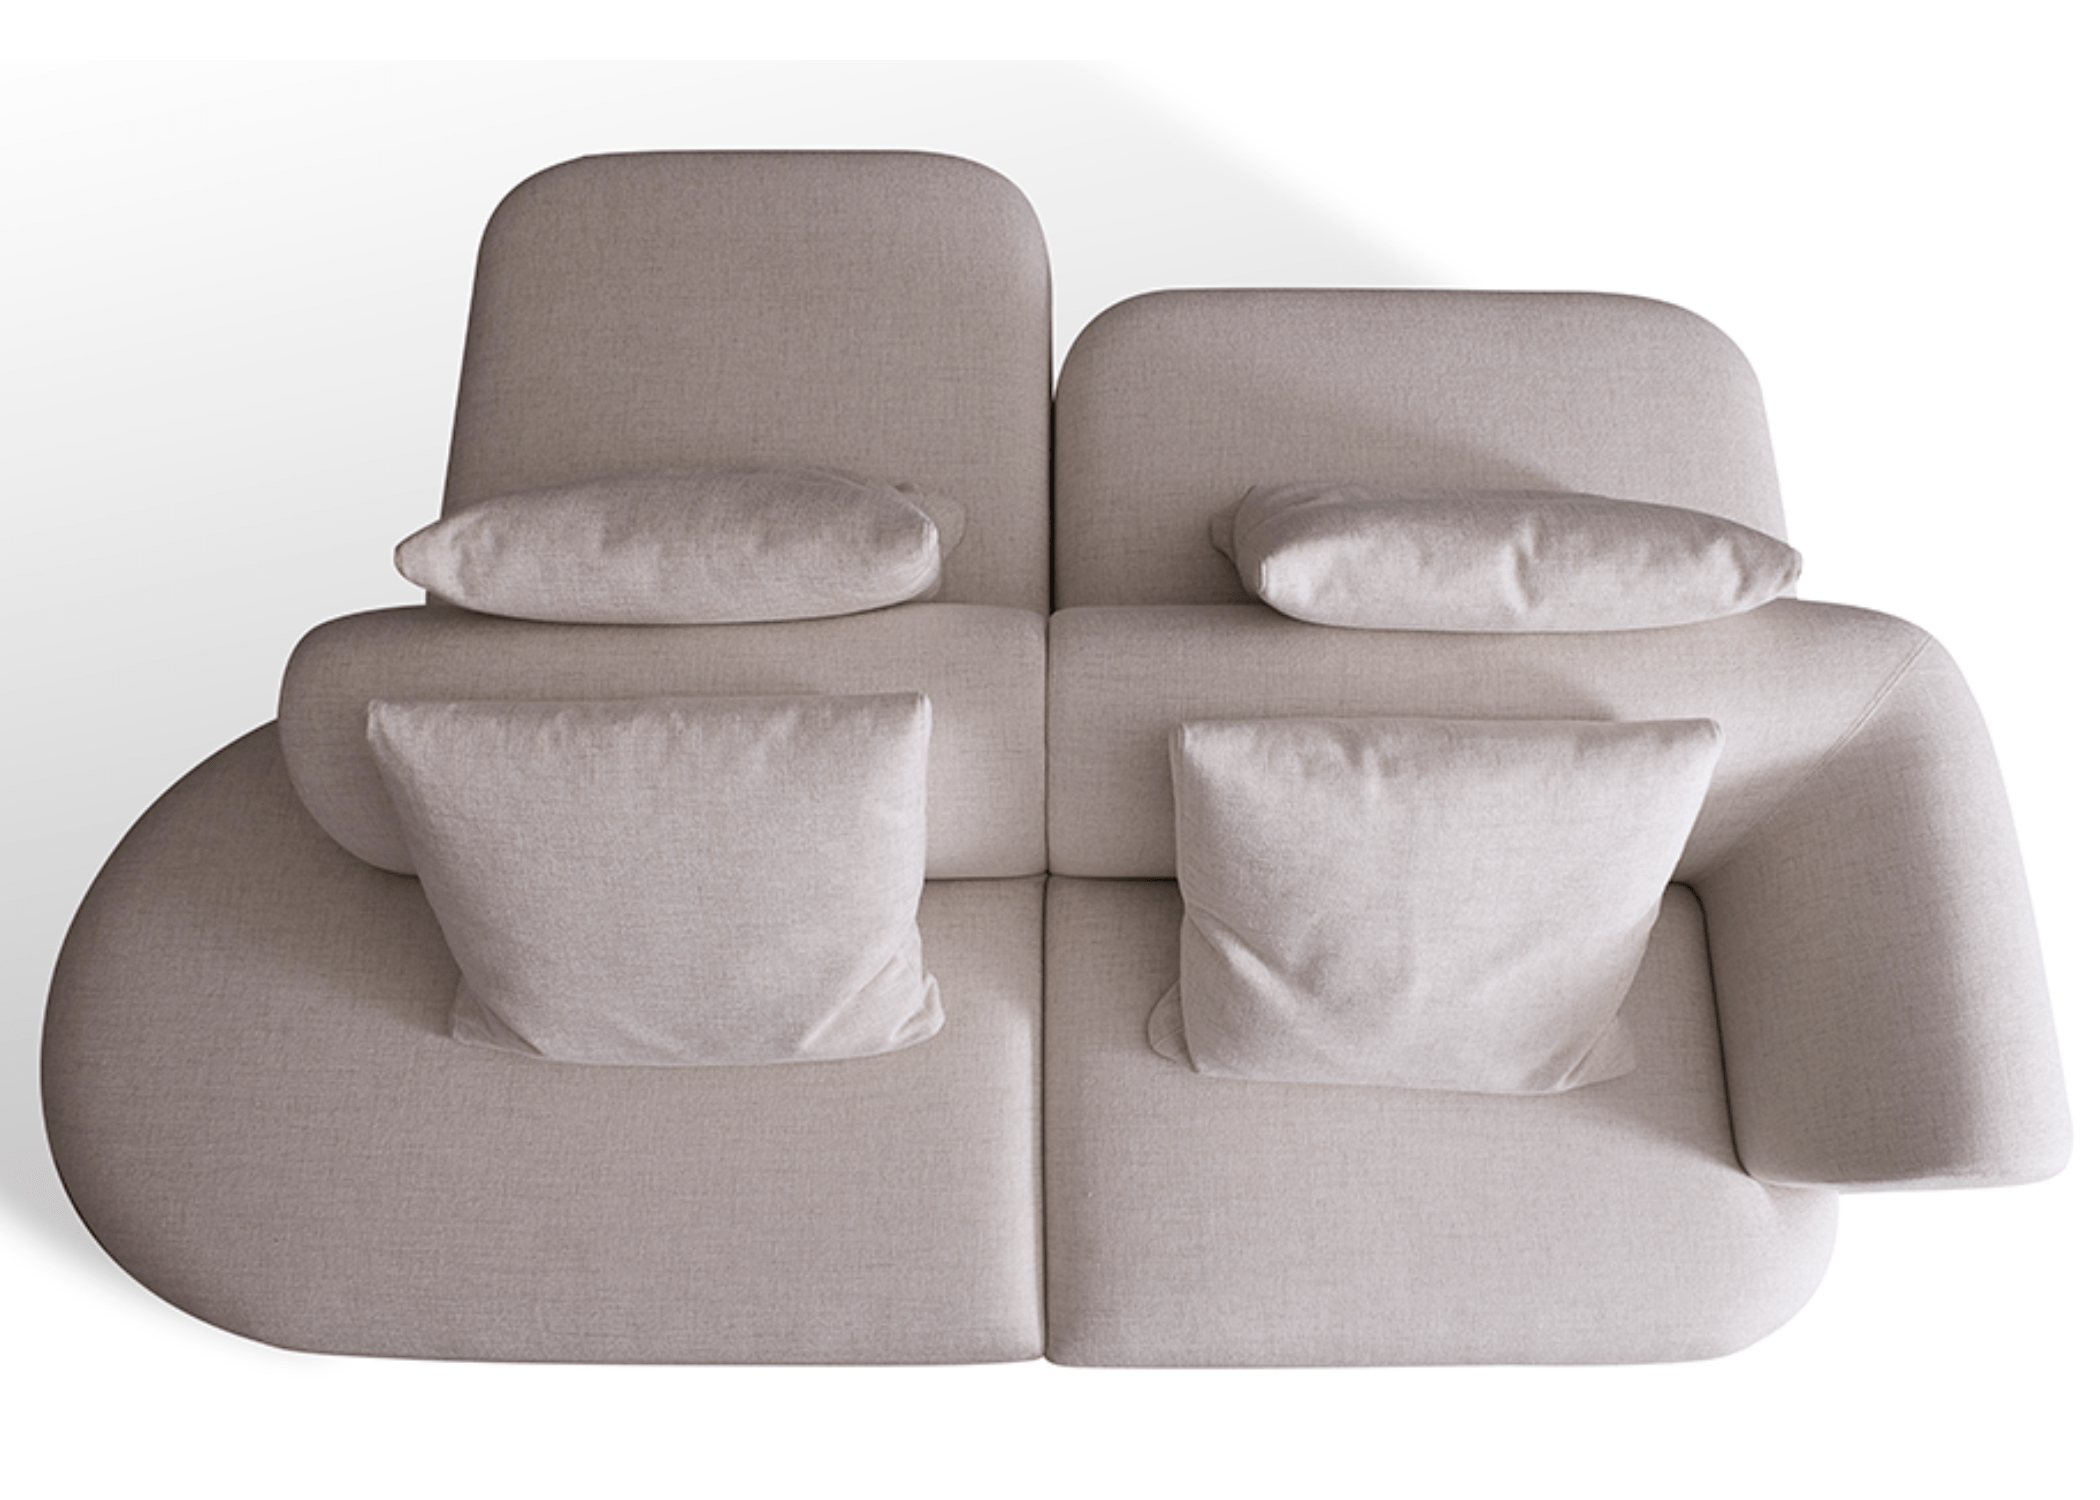 Detalhe das formas arredondadas do Sofá Comfy, proporcionando conforto.